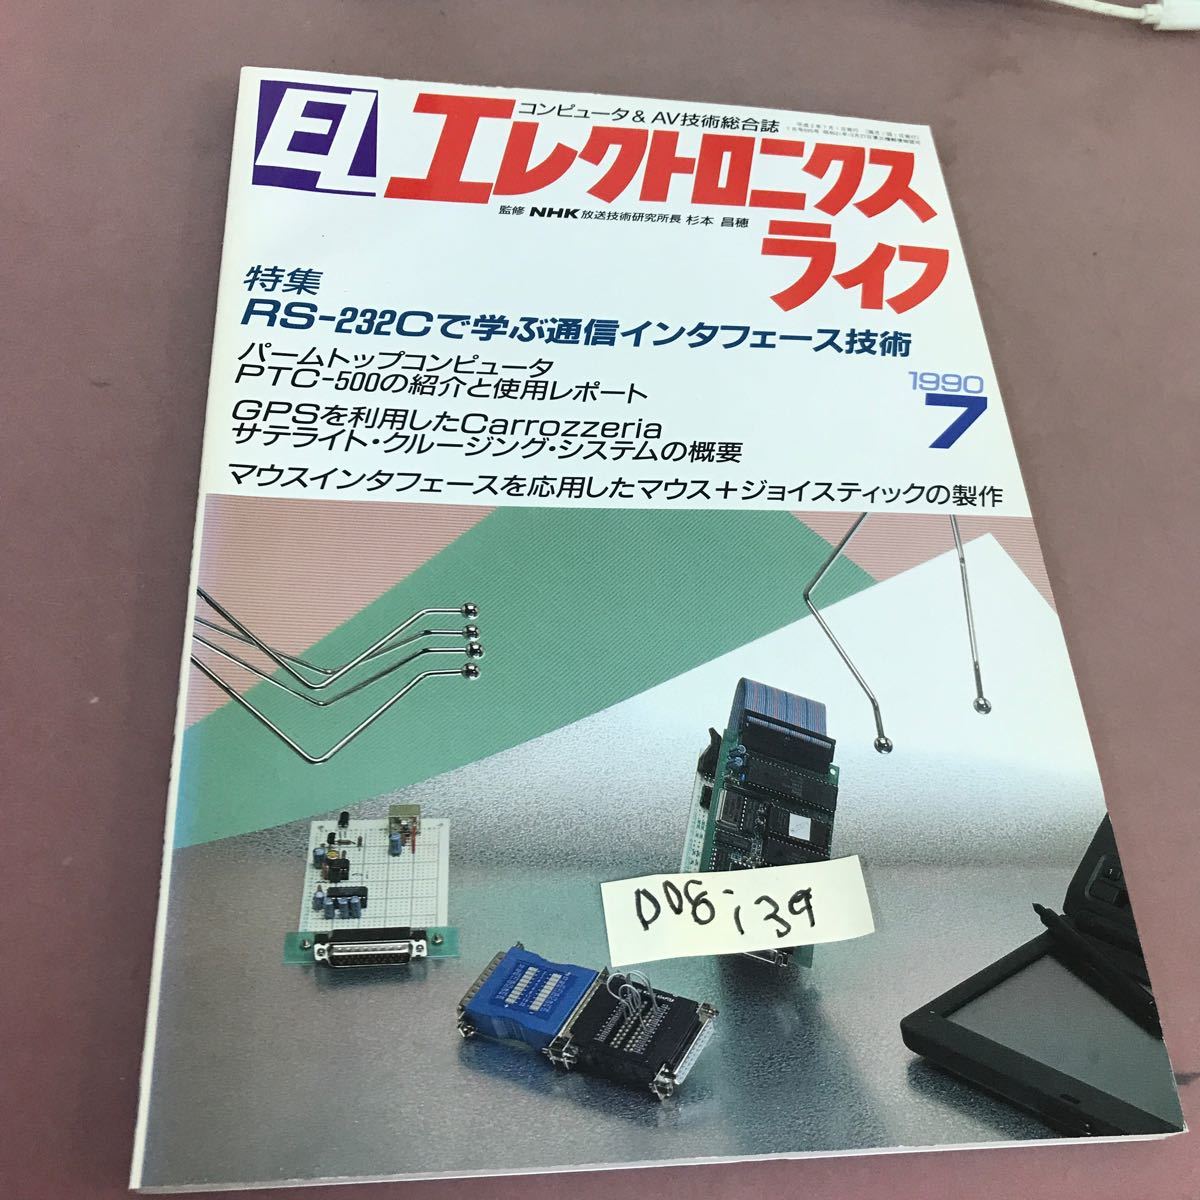 D08-139 EL エレクトロニクスライフ 特集 RS-232Cで学ぶ通信インターフェース技術 1990.7 日本放送出版協会